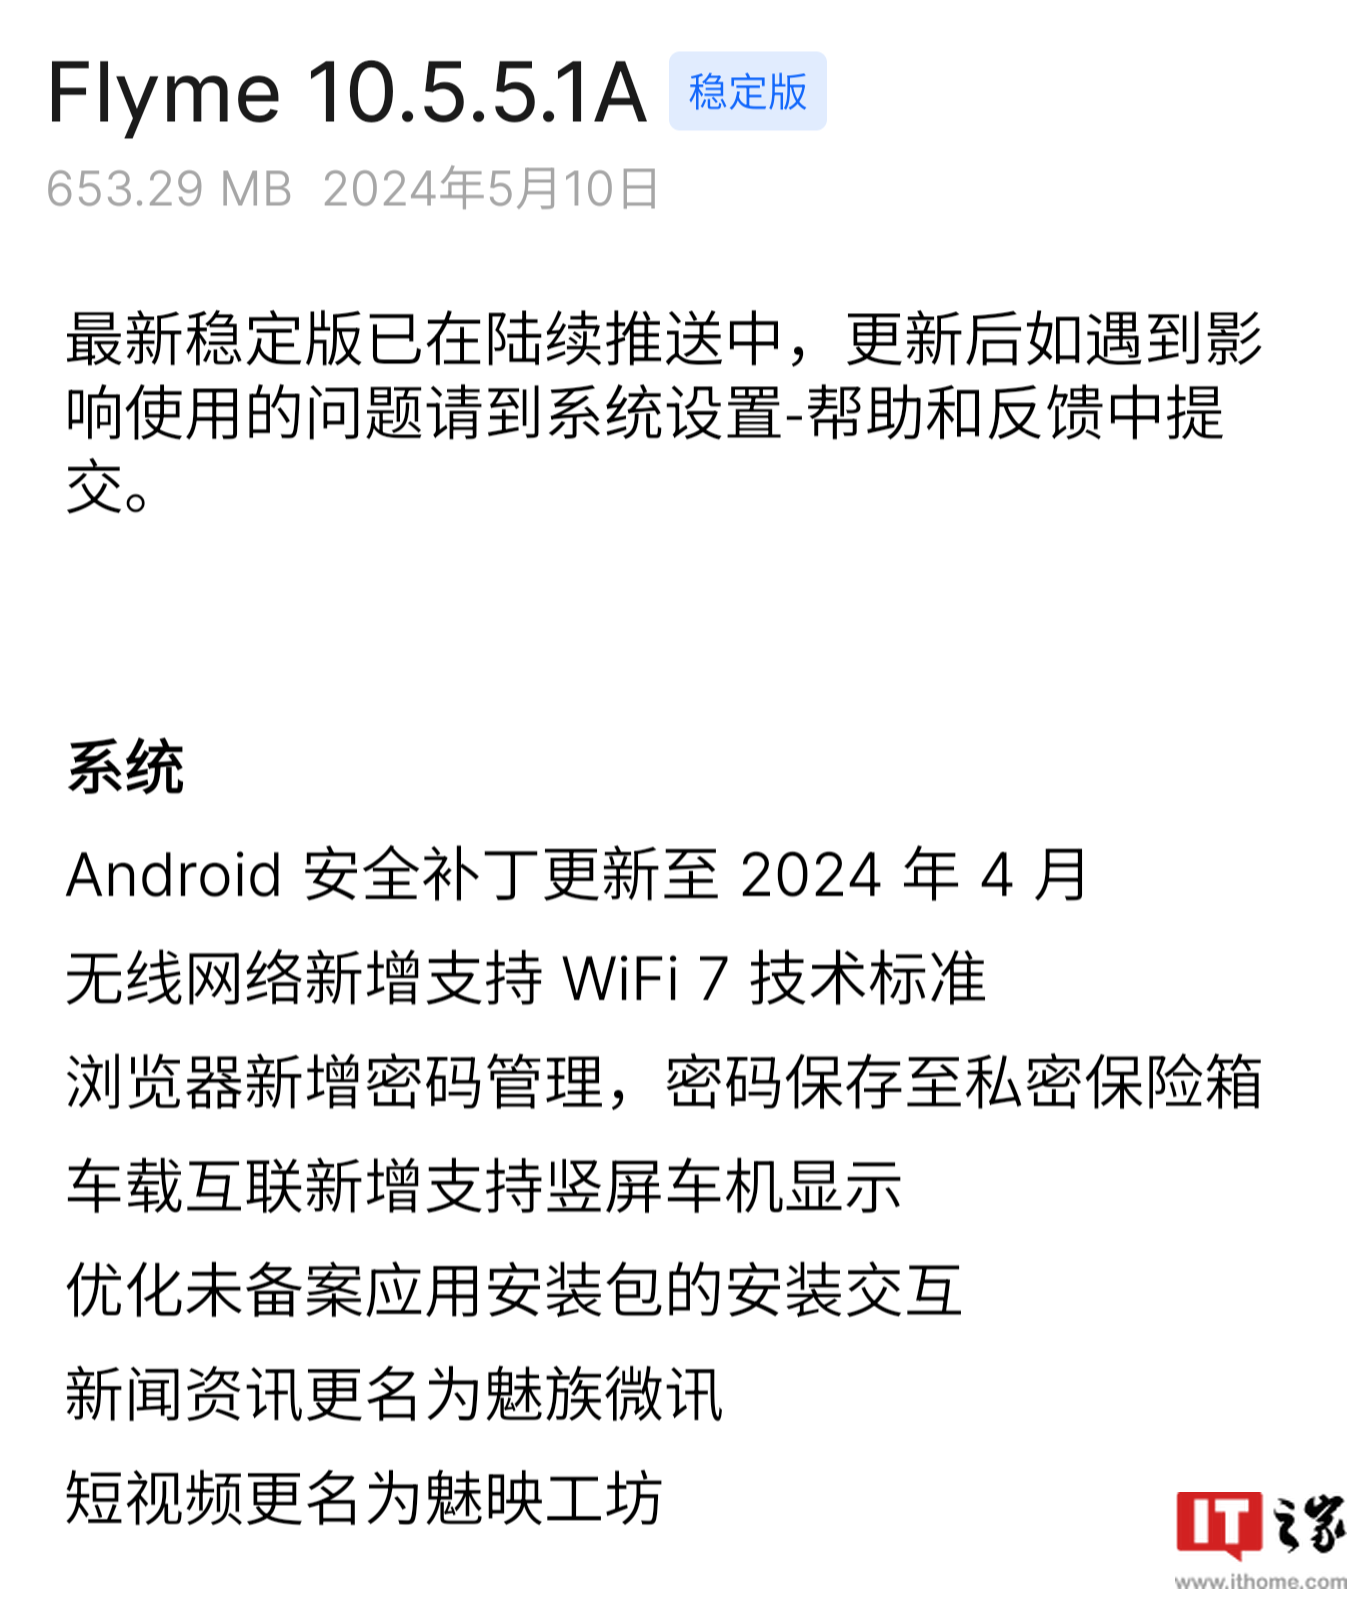 支持 Wi-Fi 7 技术标准，魅族 21 Pro 手机获推 Flyme 10.5.5.1A 系统更新